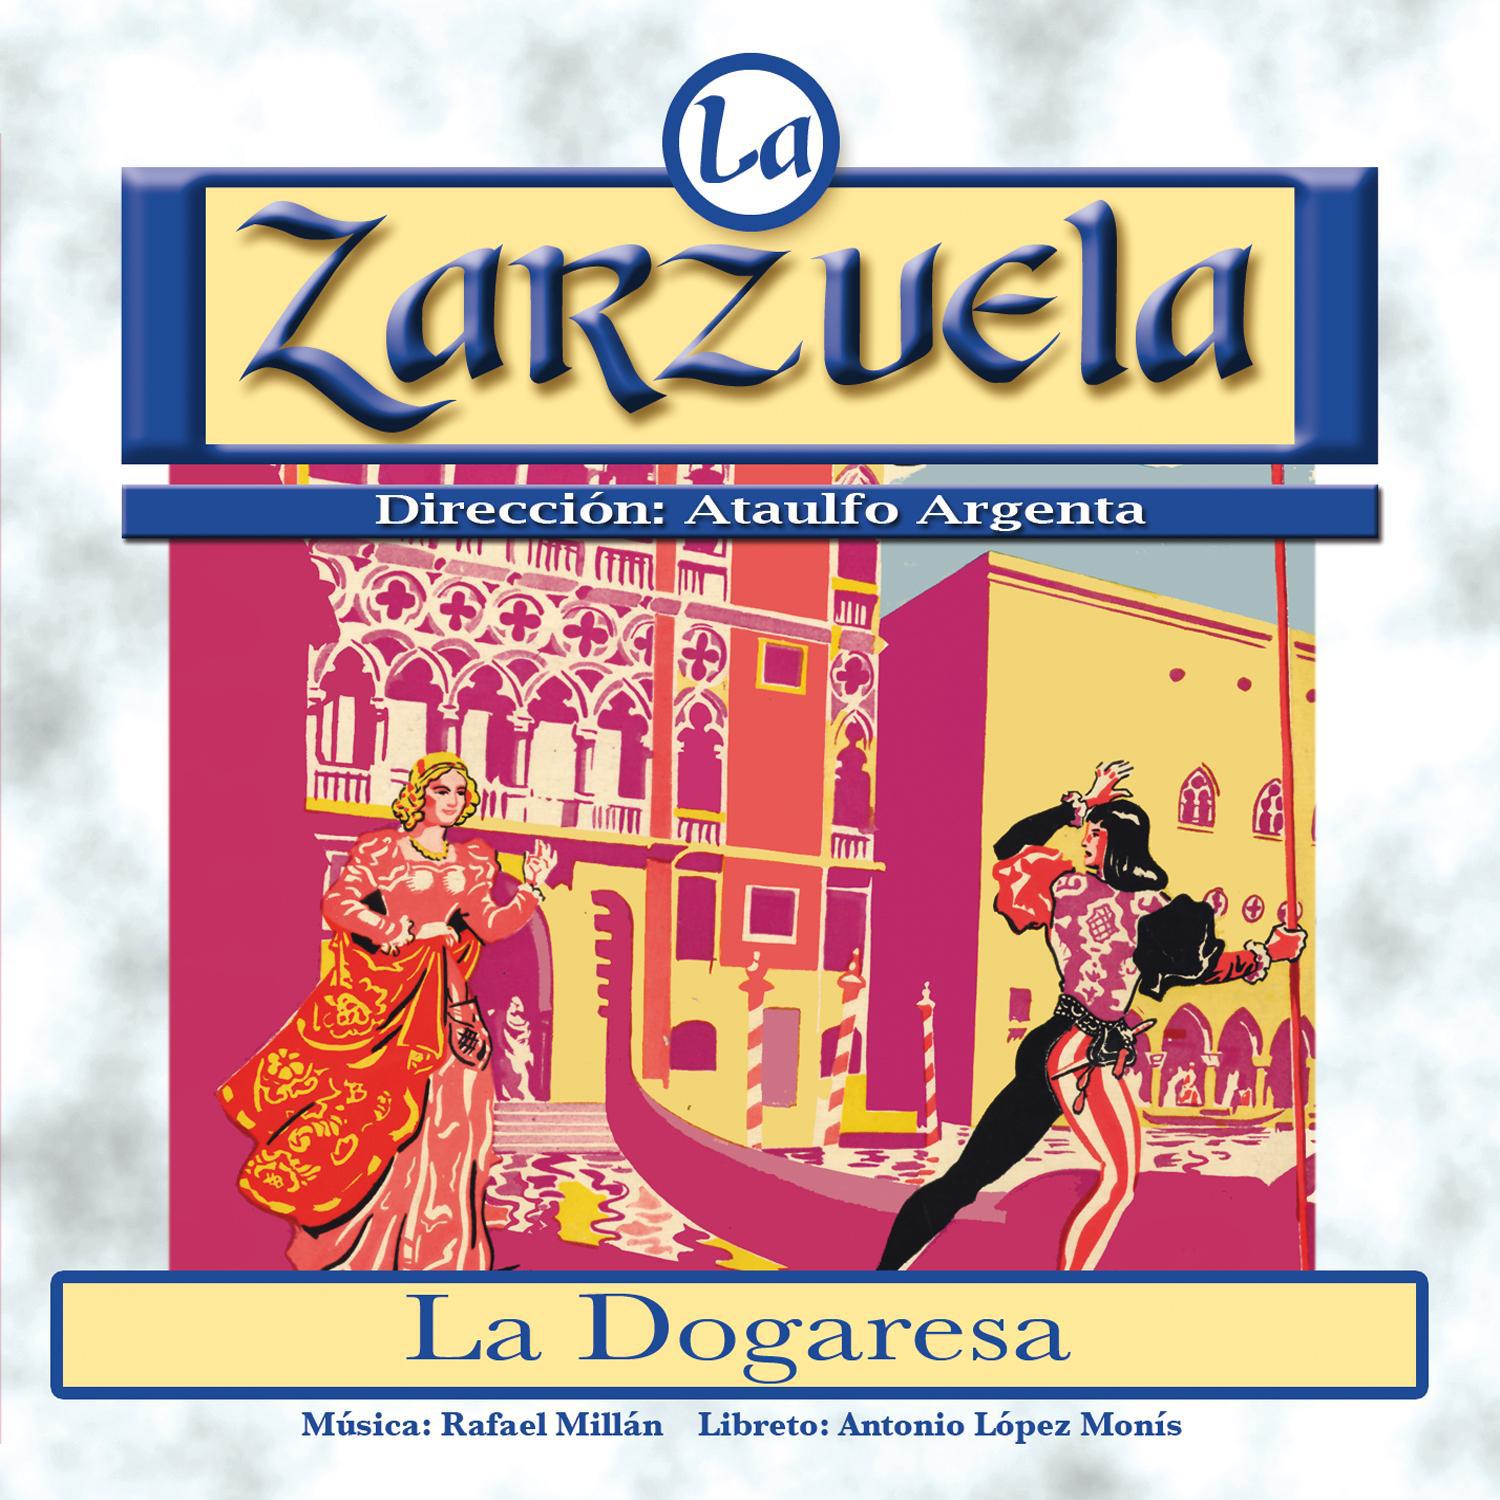 La Zarzuela: La Dogaresa Versio n Libreto Digital